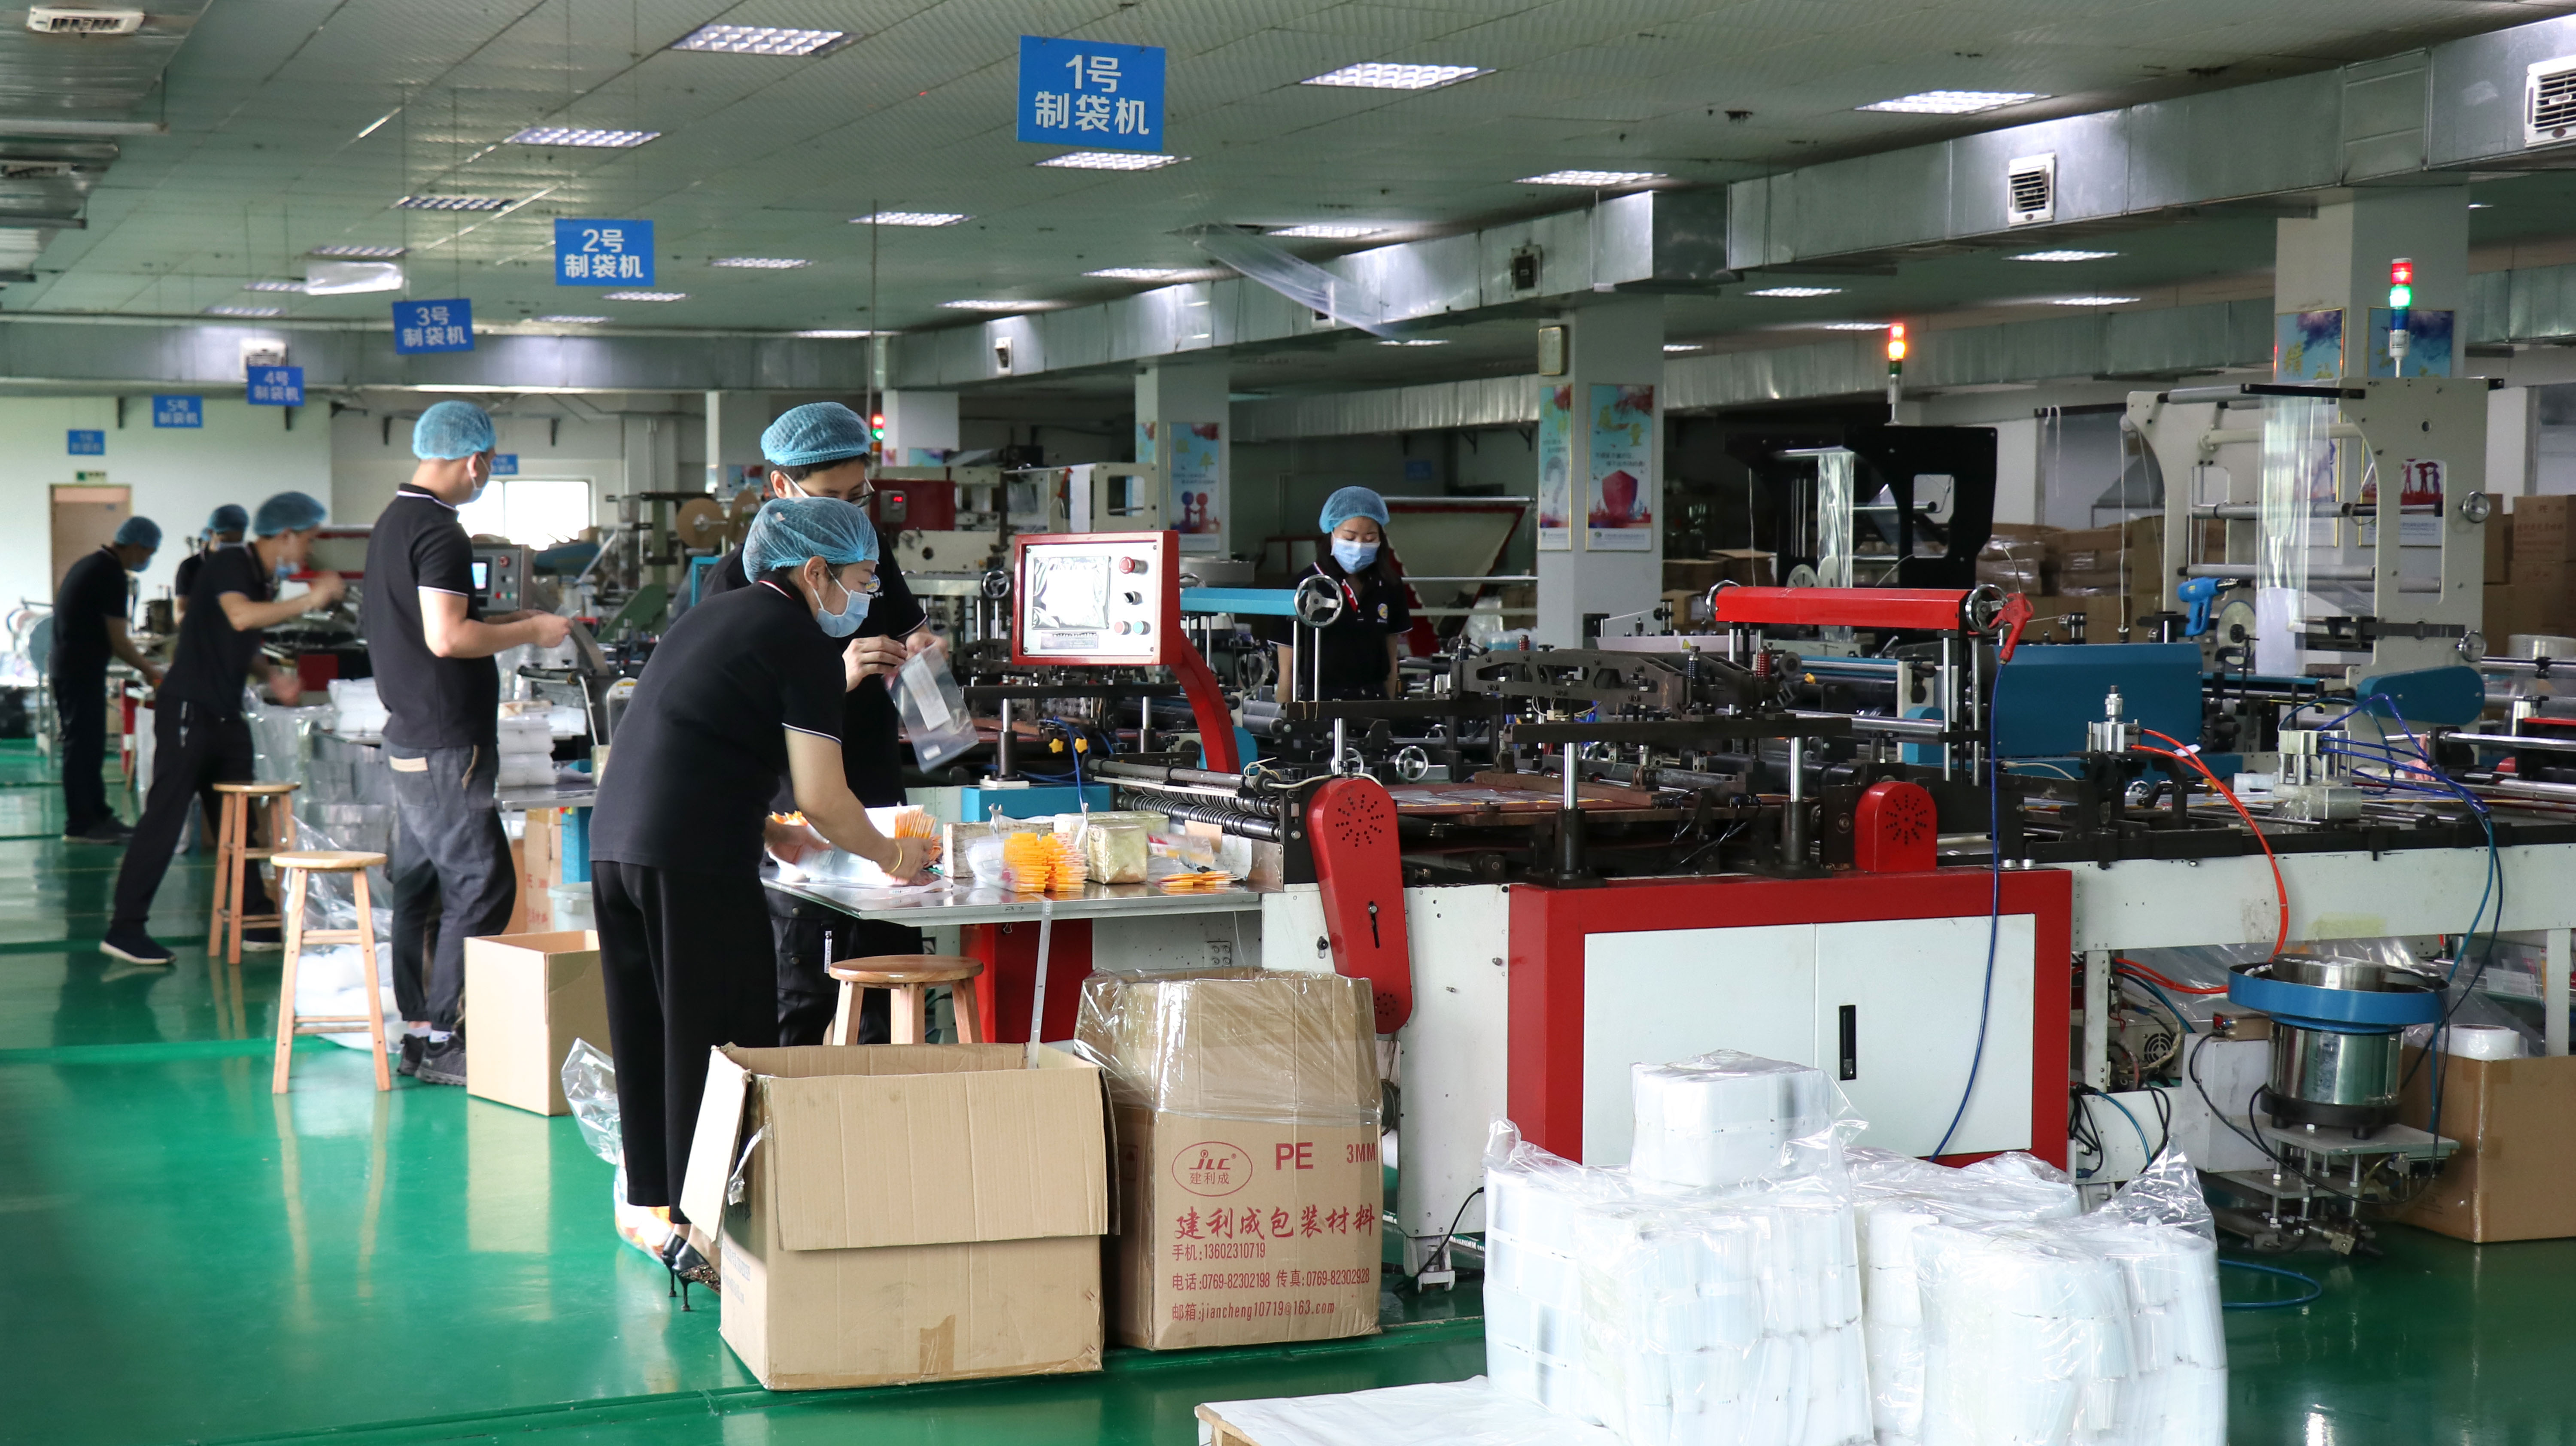 热烈祝贺东莞市顺兴源包装制品有限公司顺利通过ISO9001:2015质量管理体系认证